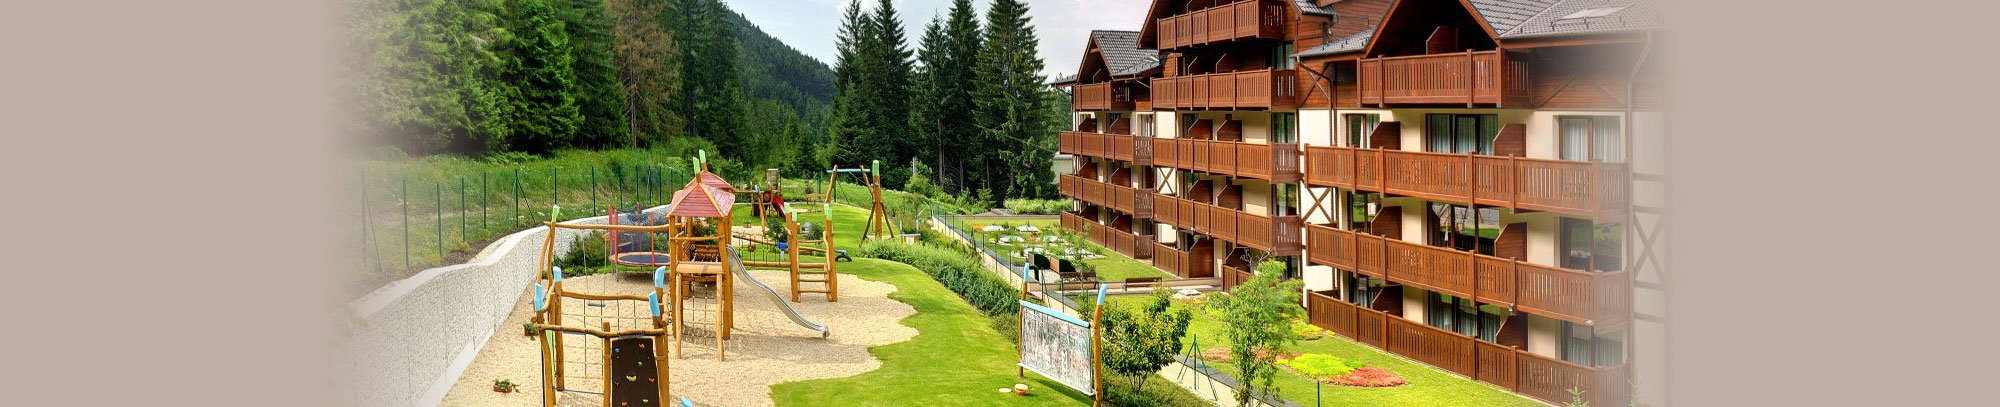 Hotel Jasna w Niskich Tatrach zakwaterowanie pokoje na Słowacji